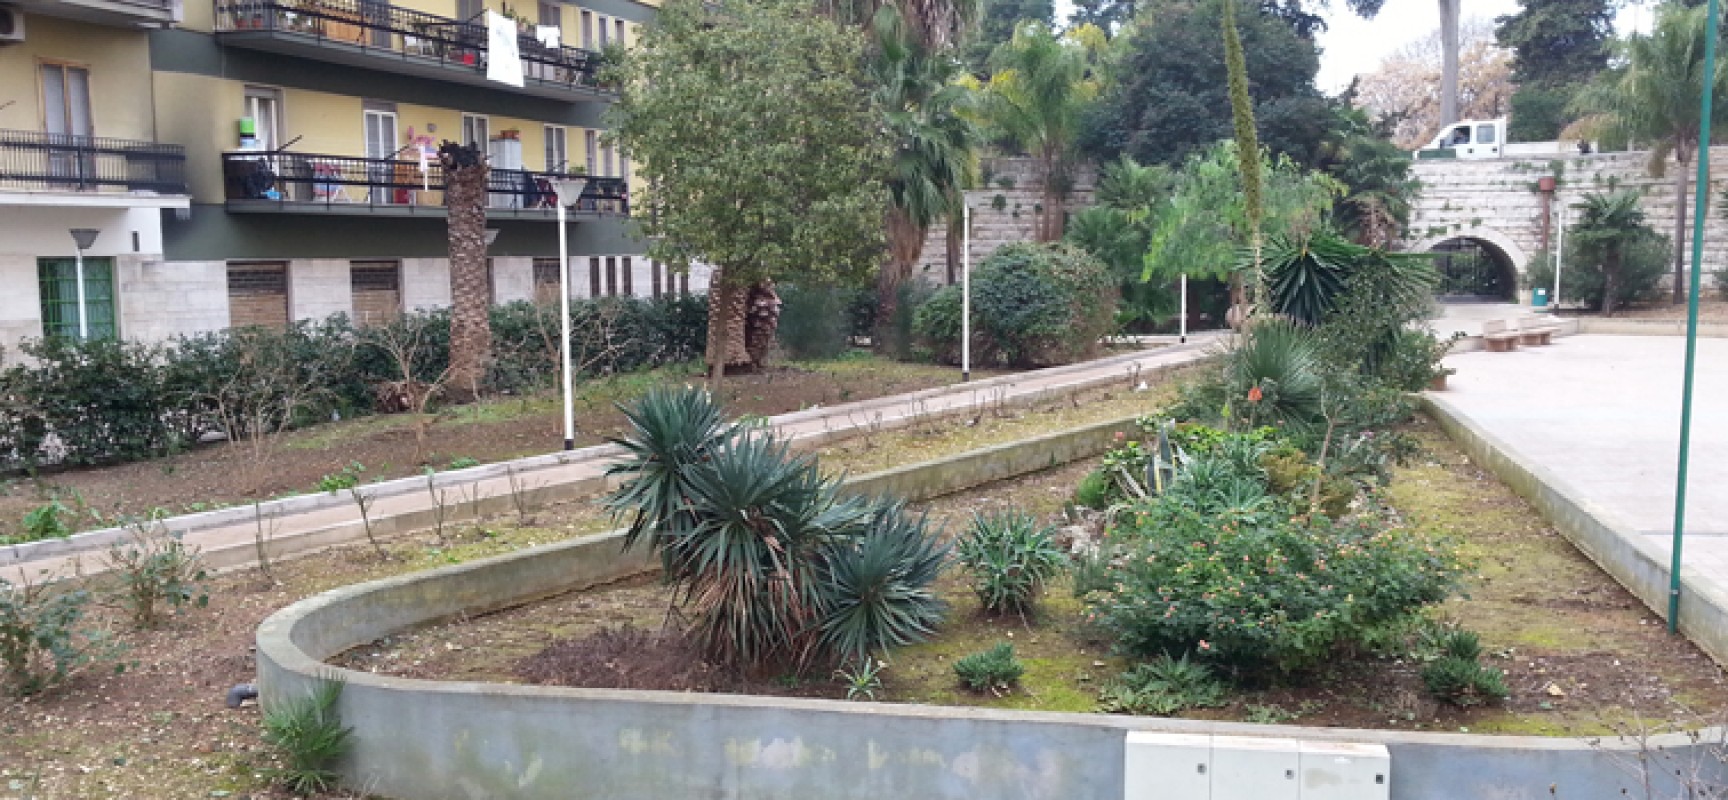 Reportage sui parchi, le osservazioni di “Roma Intangibile” su parco Unità d’Italia